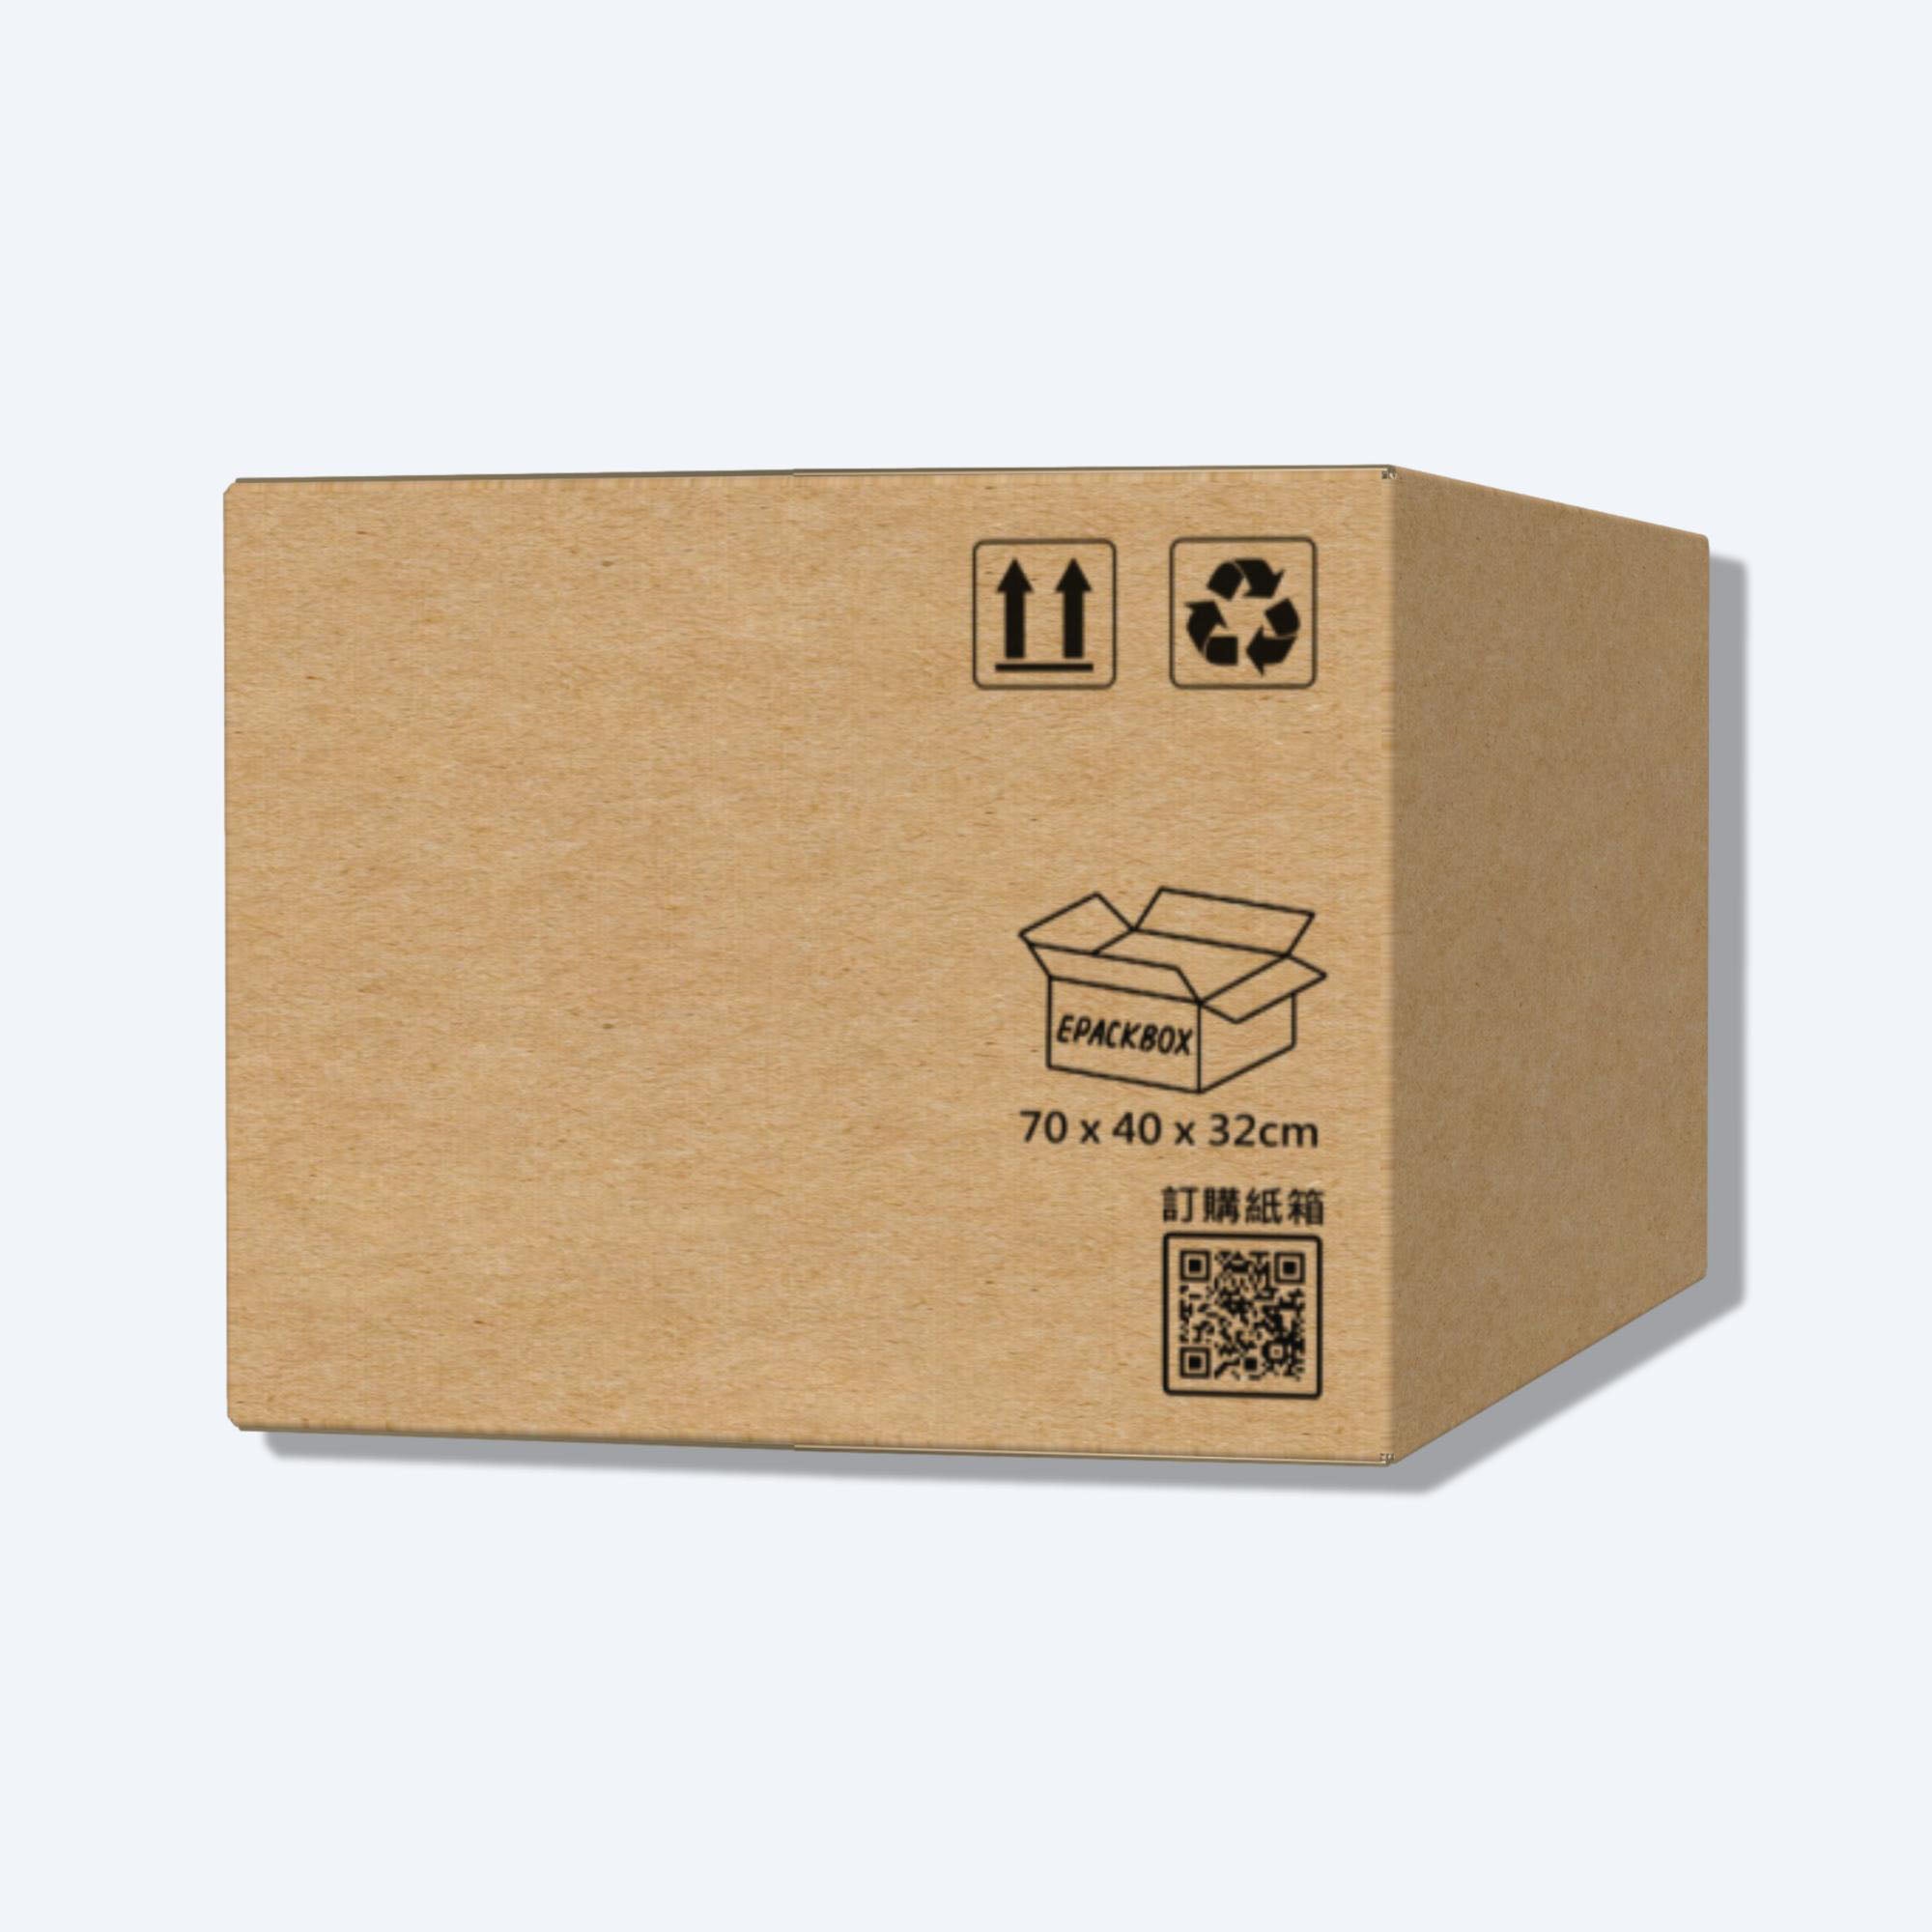 順豐速運F6尺寸紙箱側視圖，展示尺寸和質感，是適合大型物品運輸的理想選擇。易於組裝，方便實用，適合運送家具、電器等大型物品。